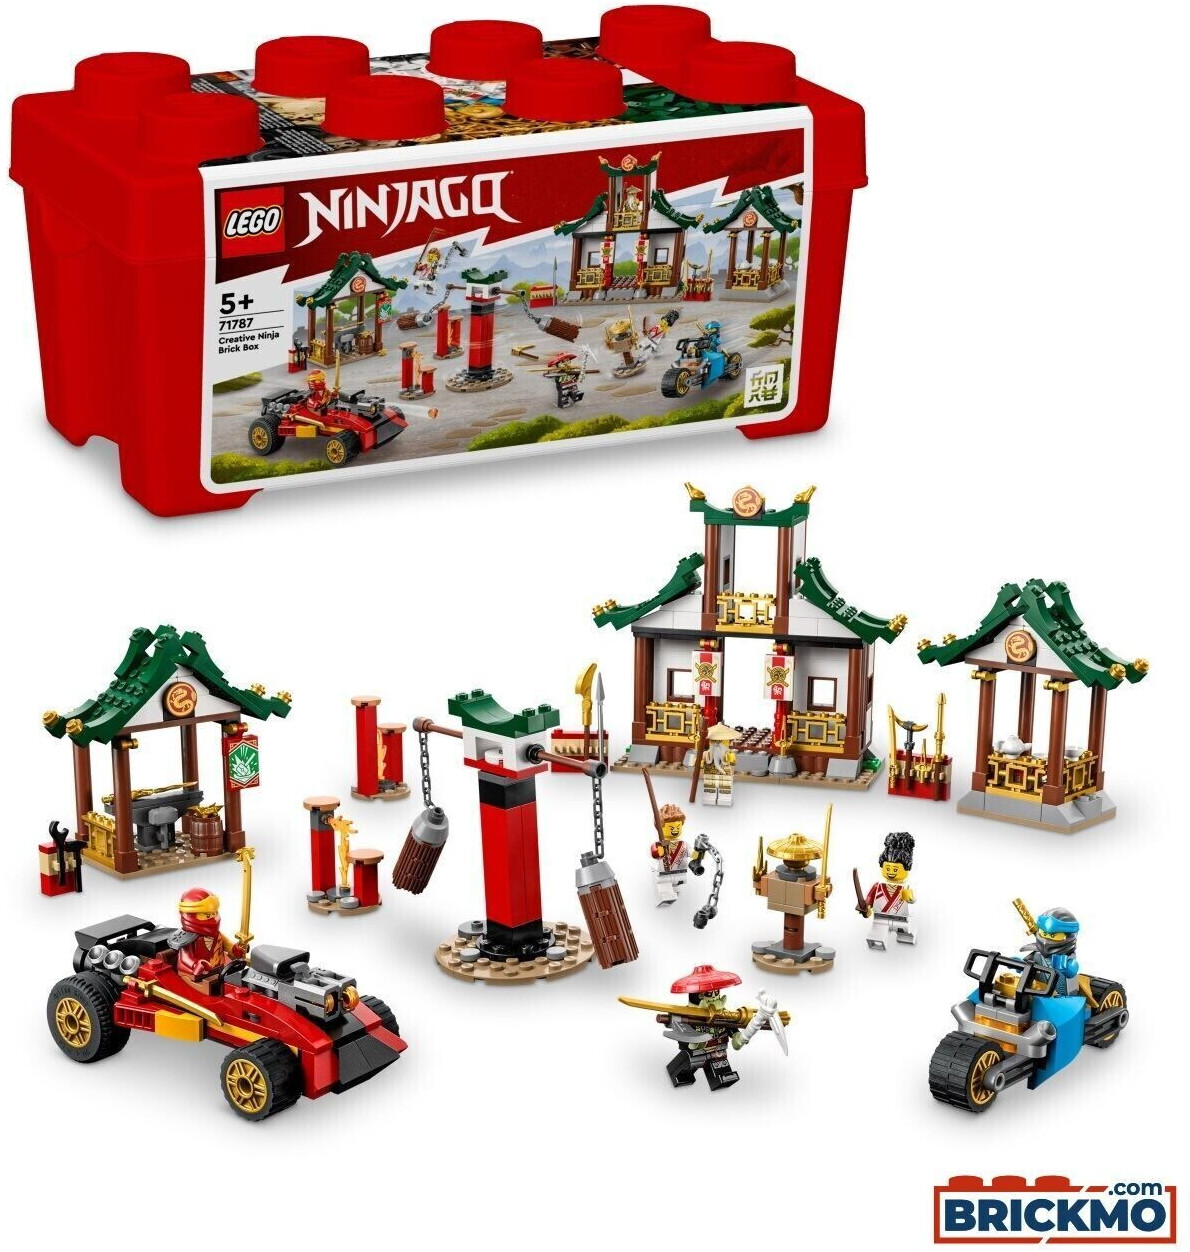 LEGO Ninjago - Caja Ninja de Ladrillos Creativos (71787) desde 55,00 €